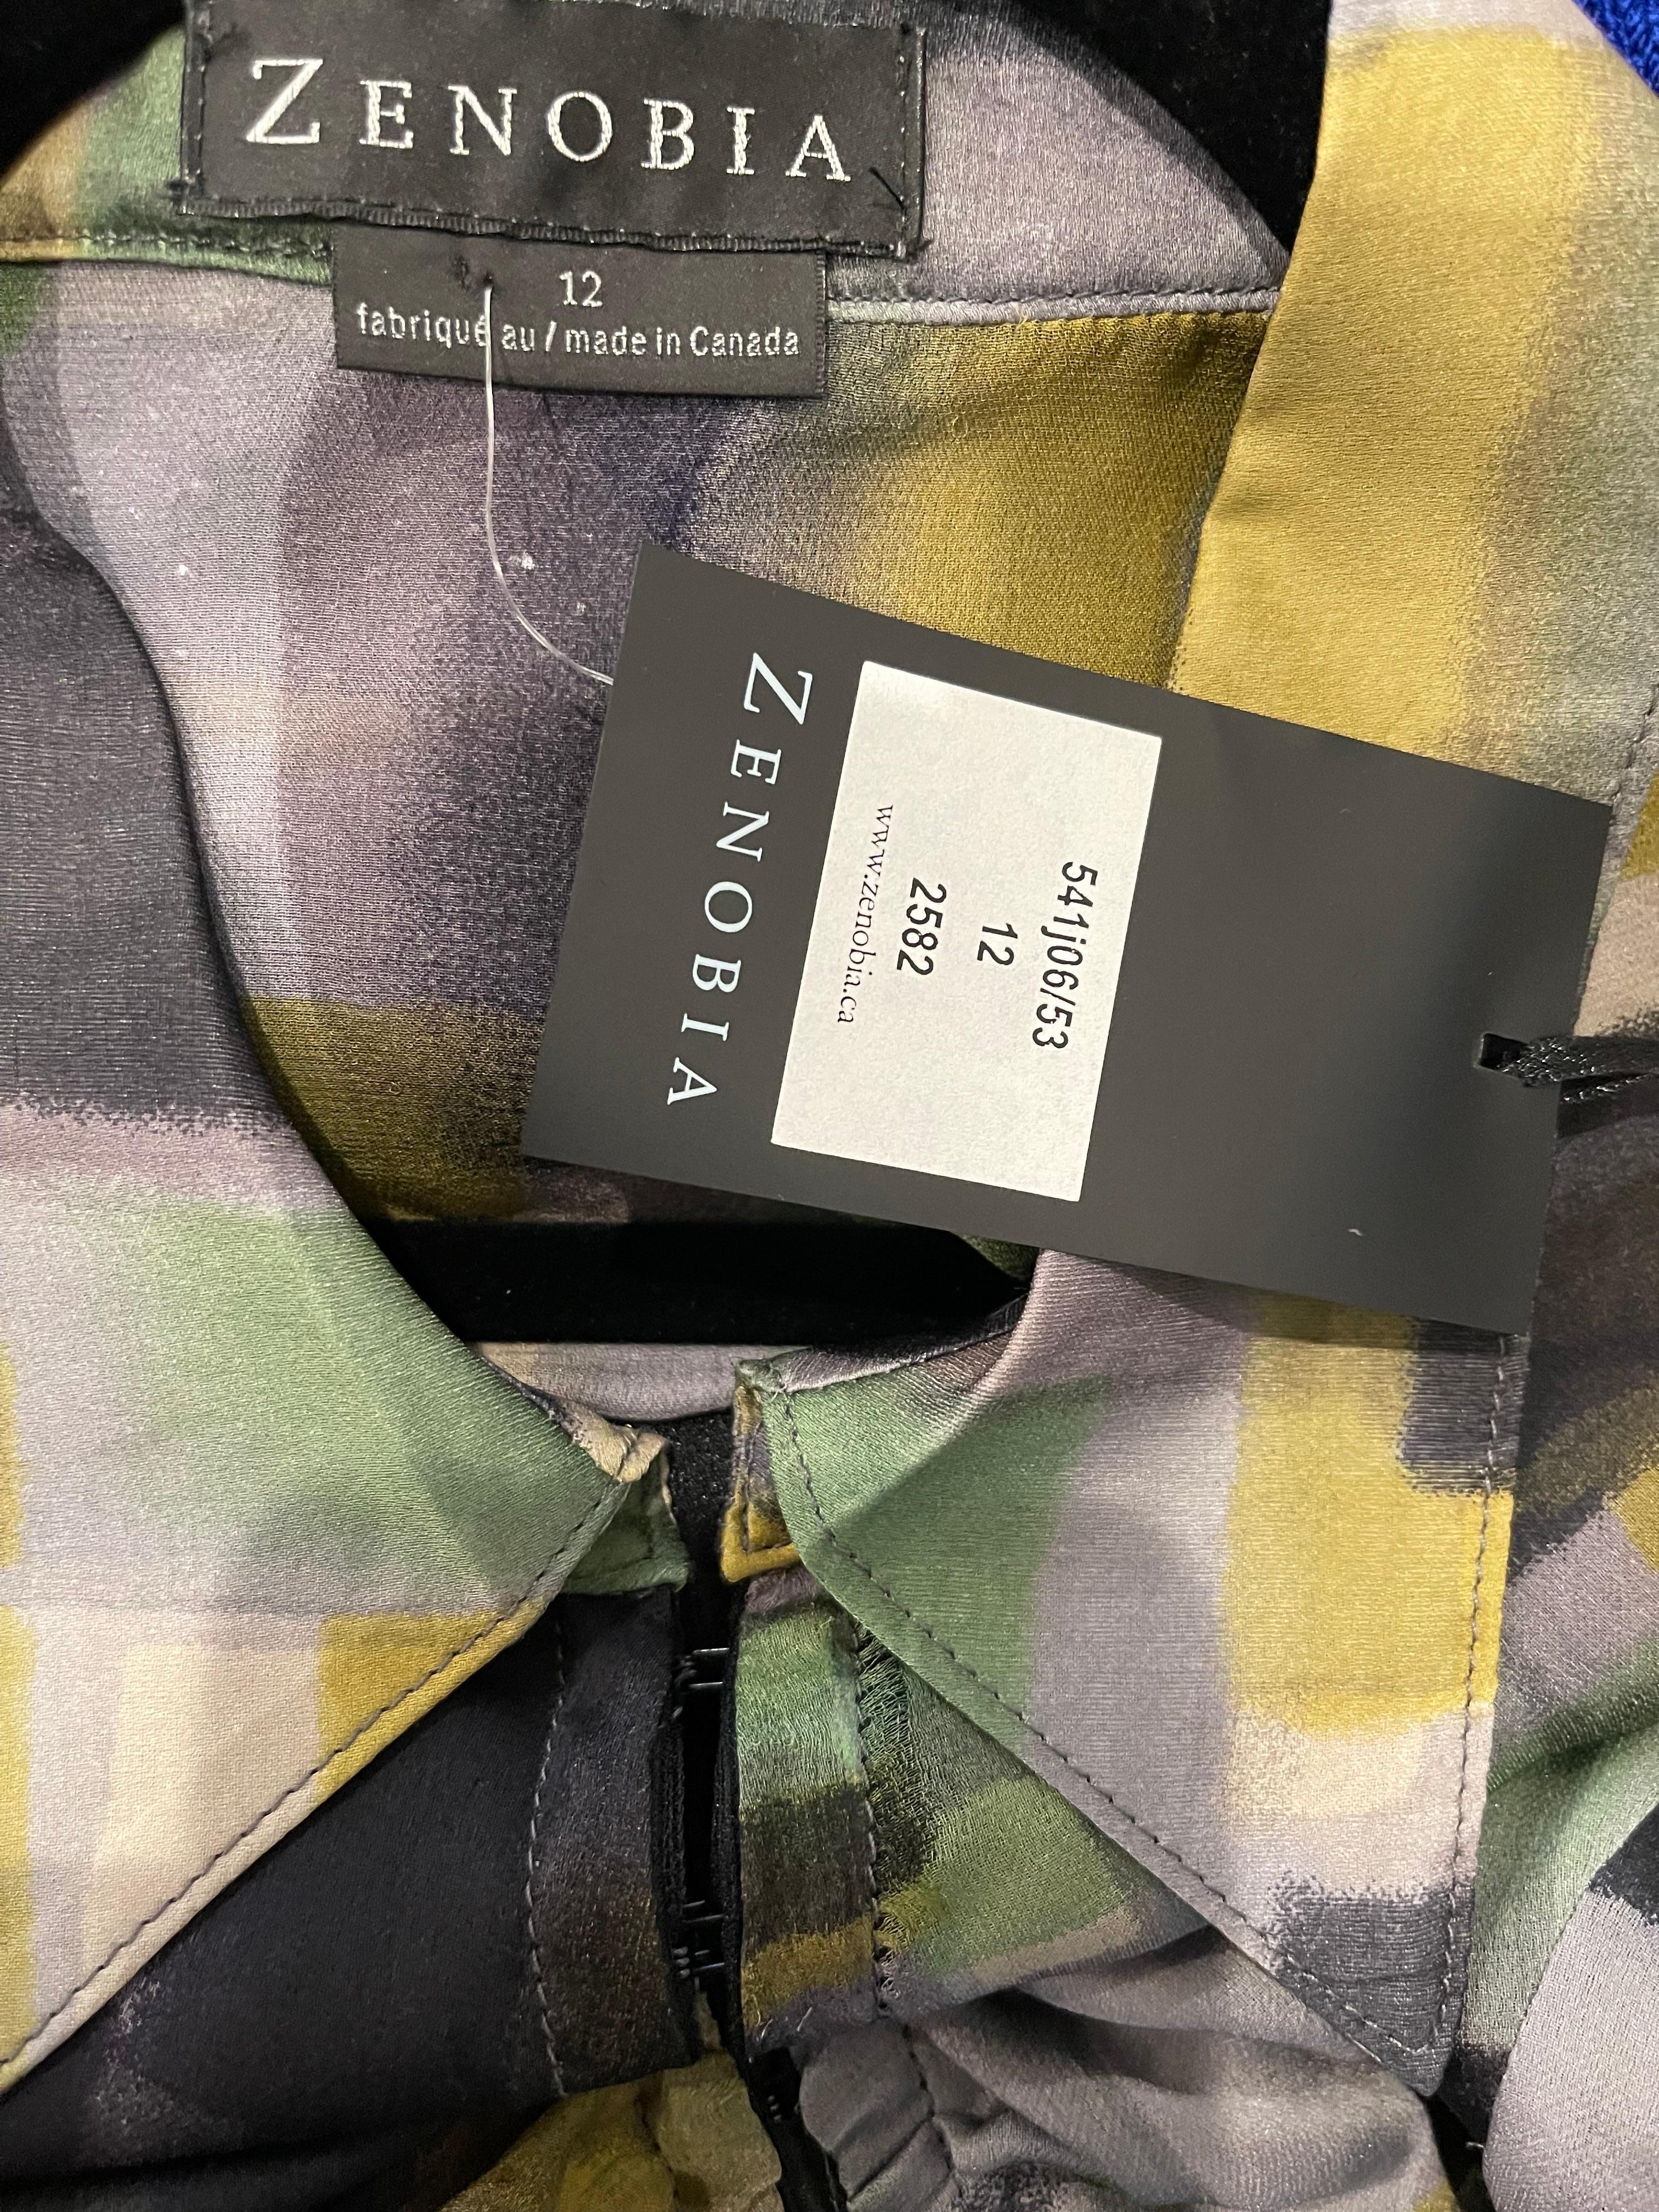 Schöne brandneue frühe 2000er Jahre Y2K ZENOBIA Seide Chiffon schiere Bluse ! Kräftige Farben in Grün, Gelb, Grau, Schwarz und Weiß. Haken- und Ösenverschlüsse auf der gesamten Vorderseite und an den Ärmelbündchen. Schmeichelnde Rüschendetails auf